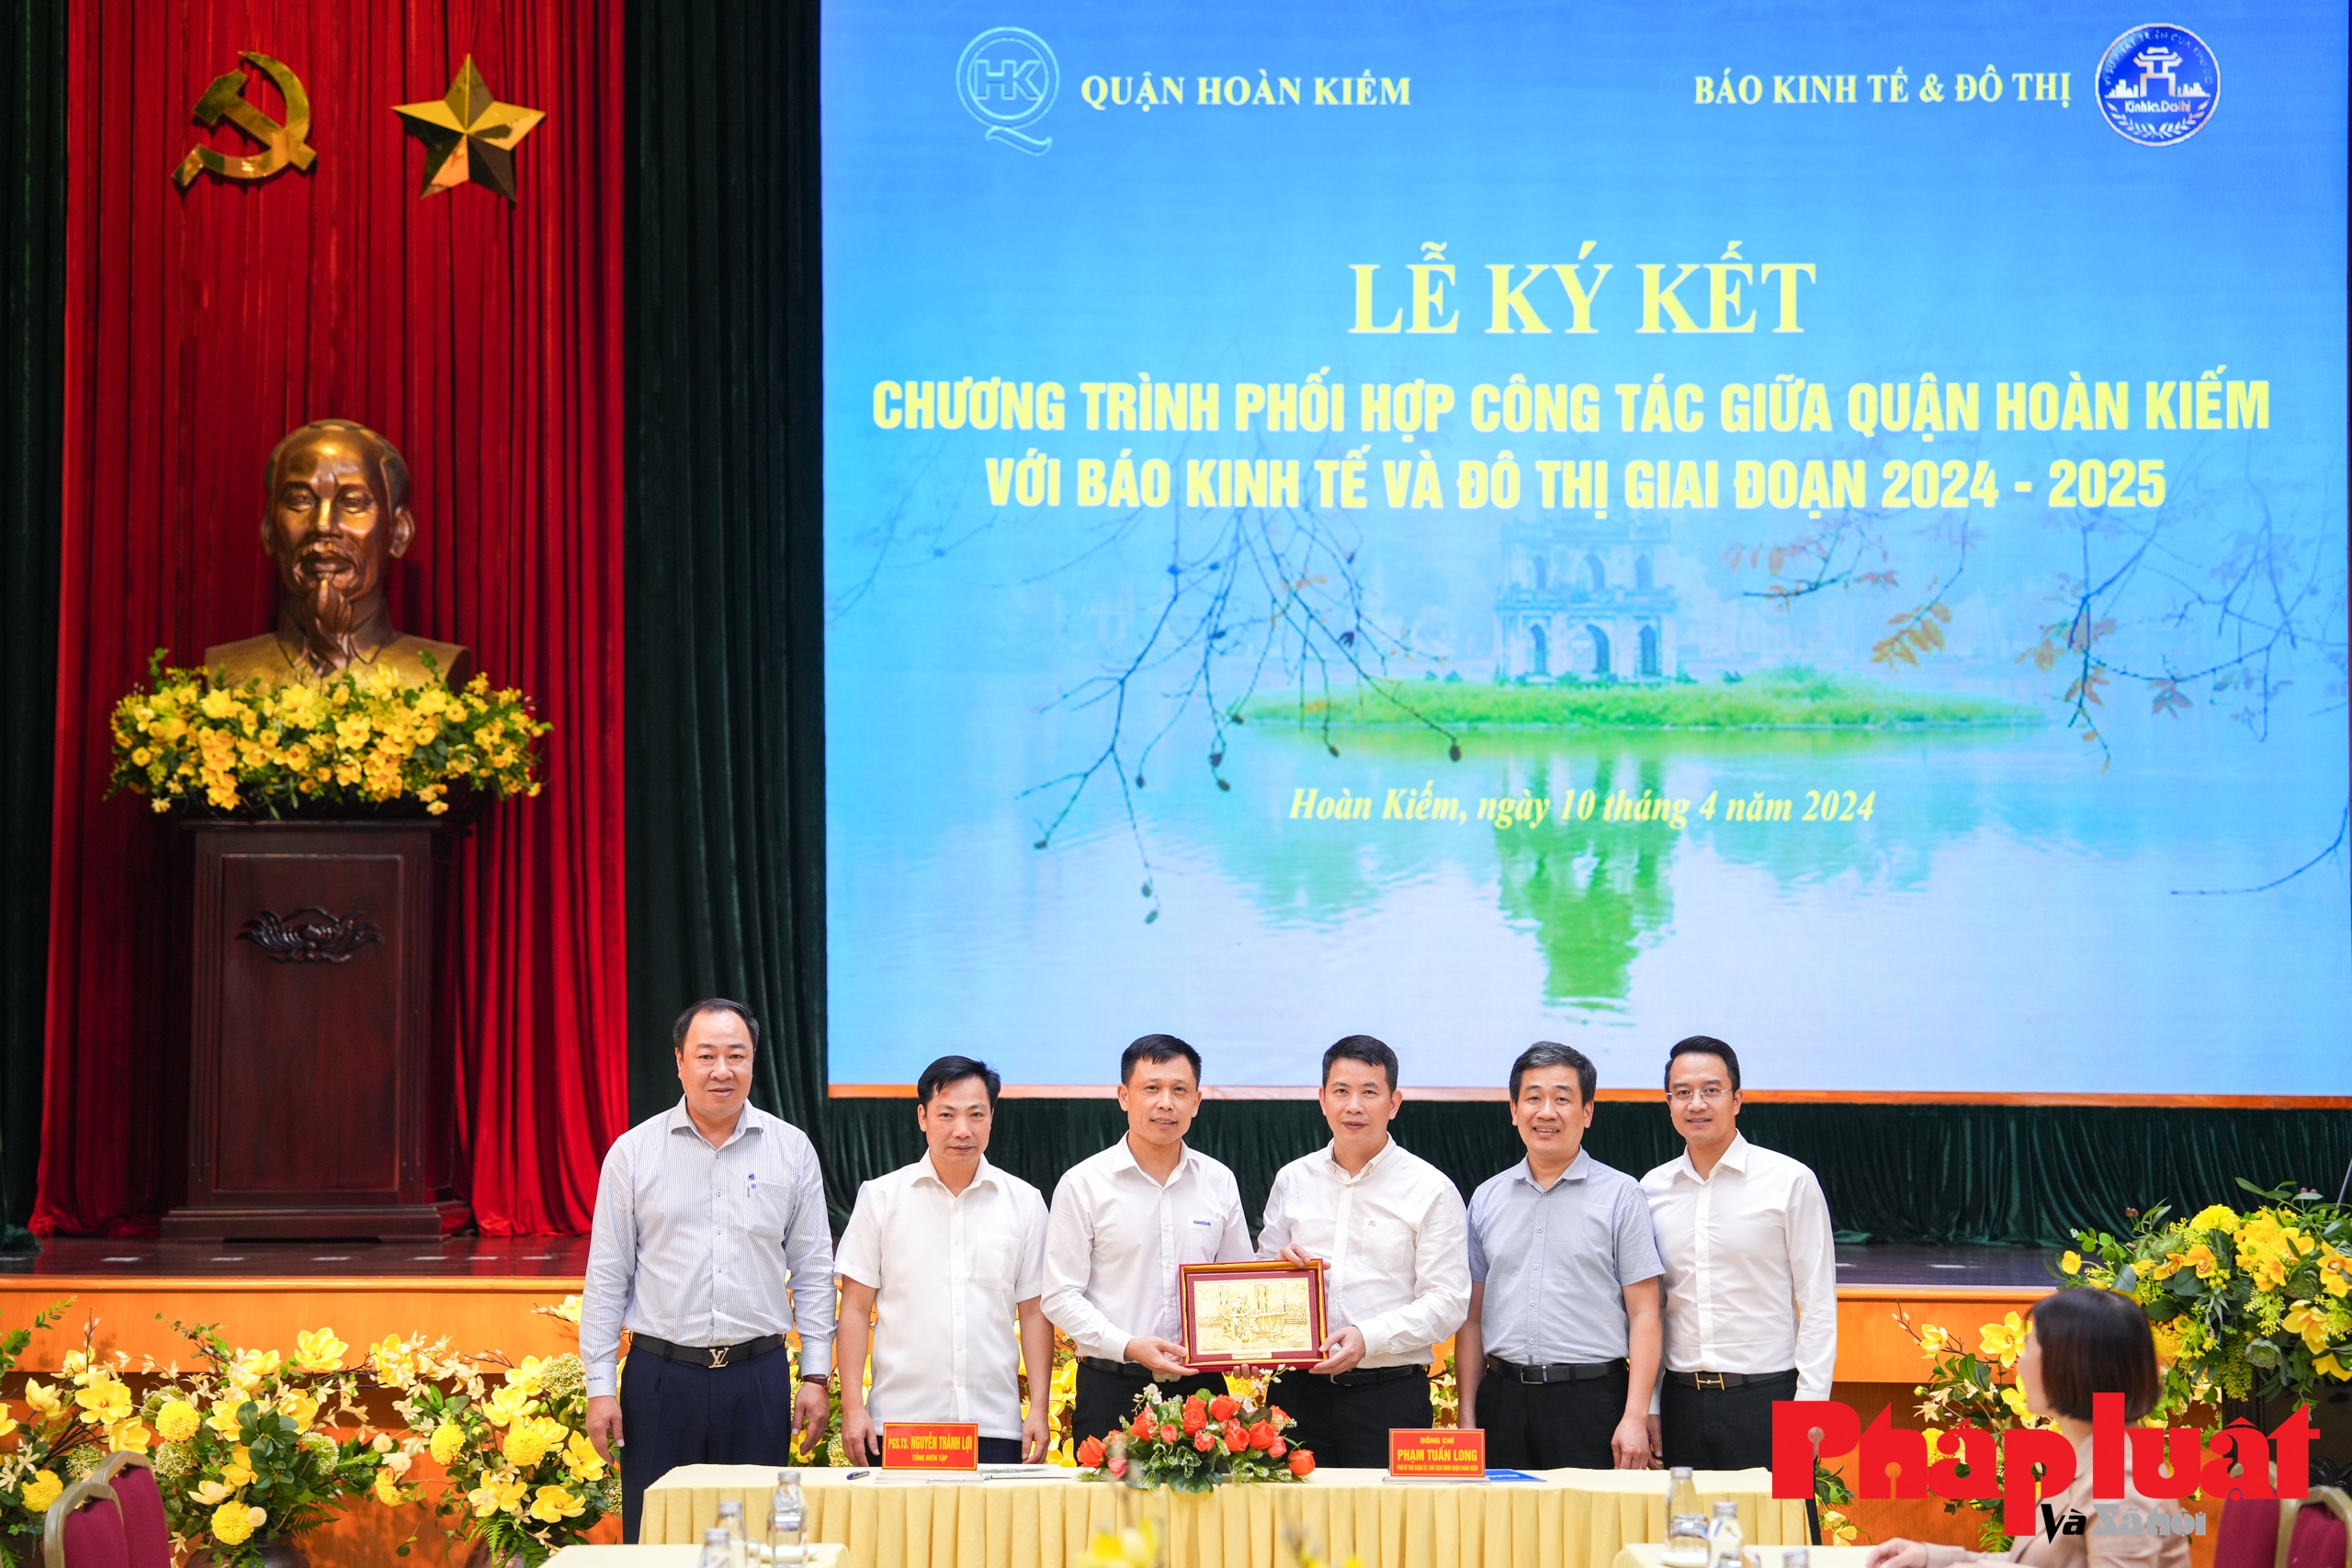 Báo Kinh tế và Đô thị và quận Hoàn Kiếm ký kết chương trình phối hợp